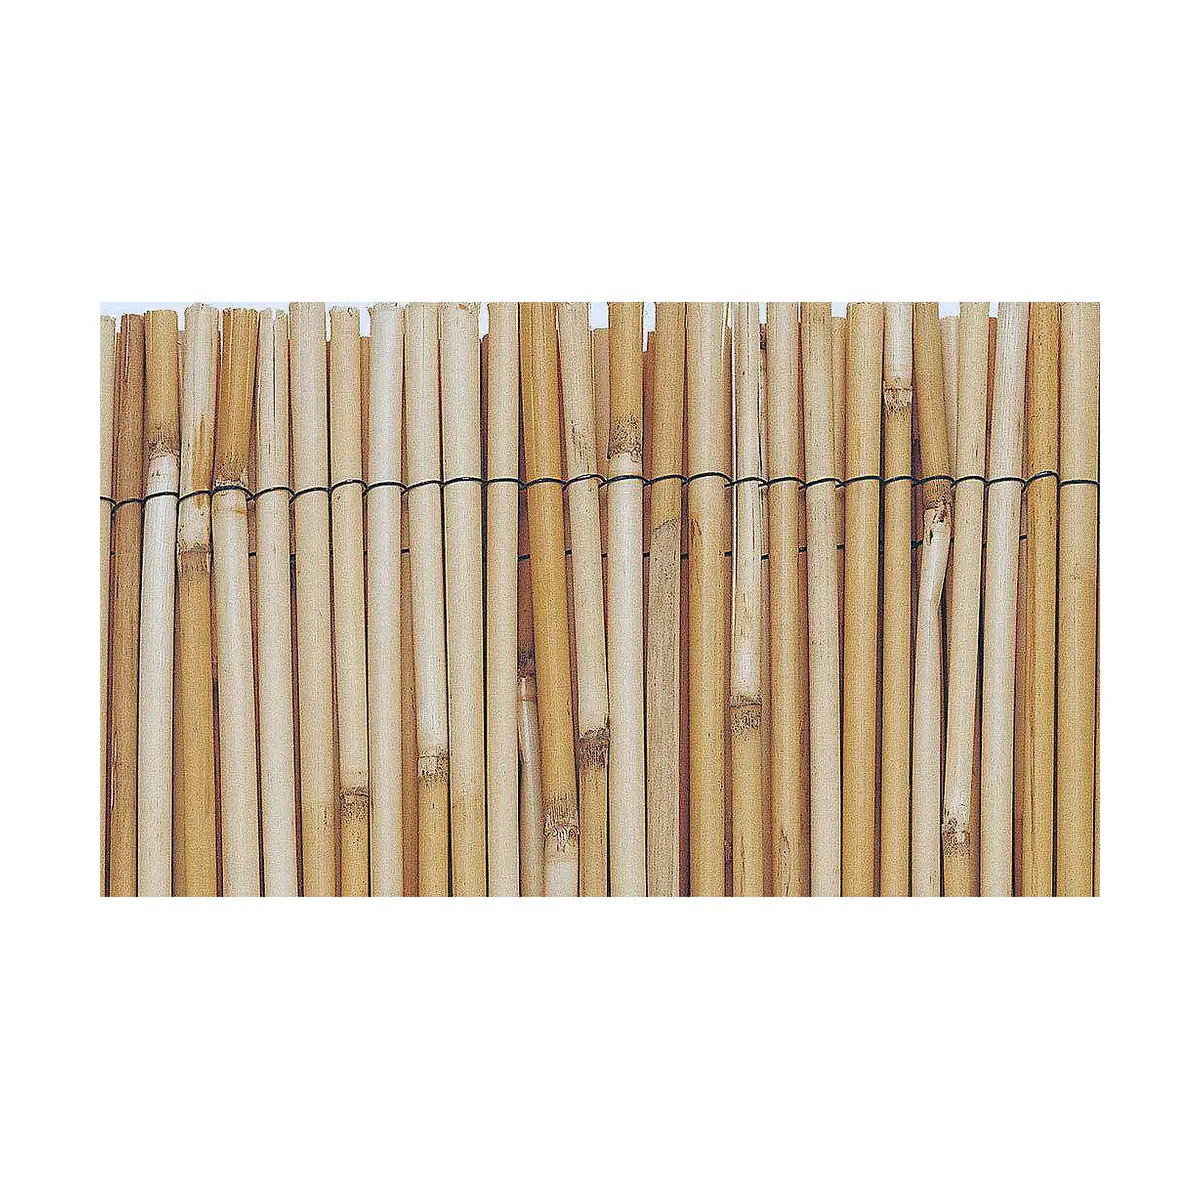 Palissade de jardin edm marron bambou 1 x 5 m_4549. DIAYTAR SENEGAL - Votre Destination pour un Shopping Réfléchi. Découvrez notre gamme variée et choisissez des produits qui correspondent à vos valeurs et à votre style de vie.